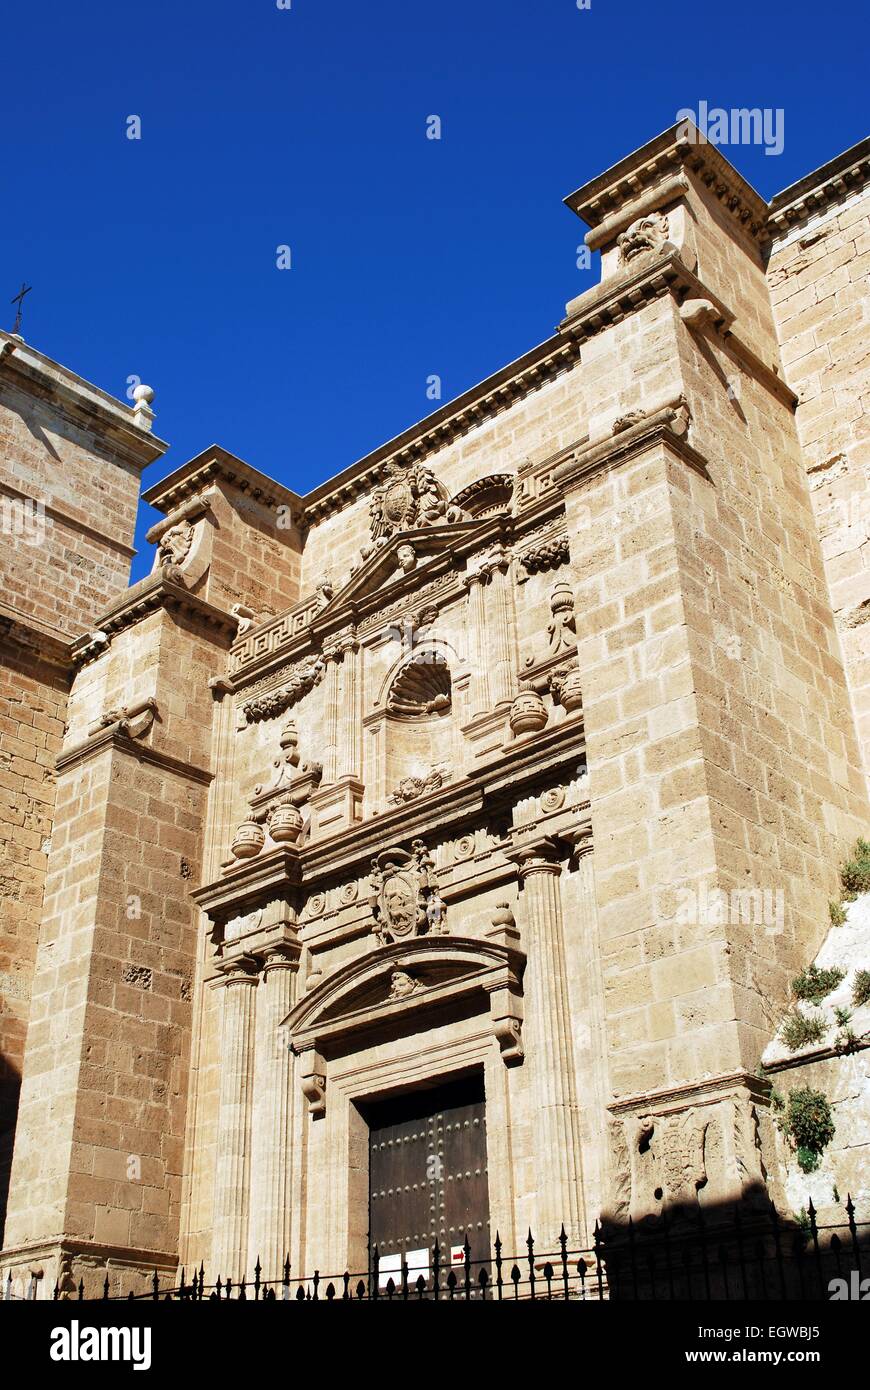 Cattedrale di Almería ingresso, Almeria, provincia di Almeria, Andalusia, Spagna, Europa occidentale. Foto Stock